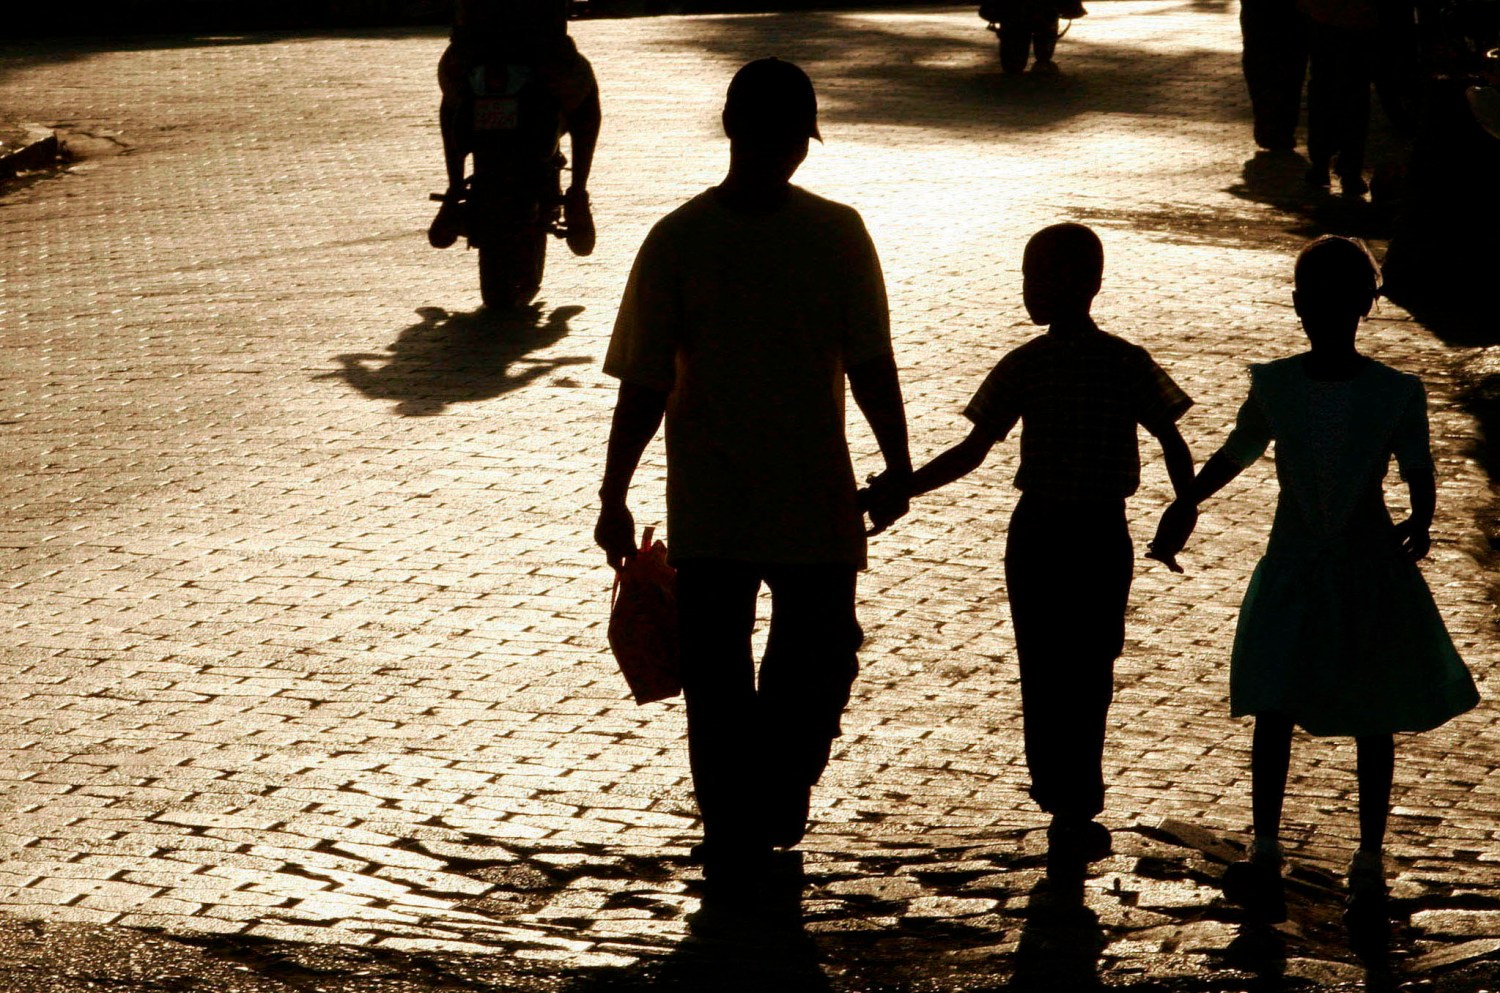 A shadowed family walks through a town.